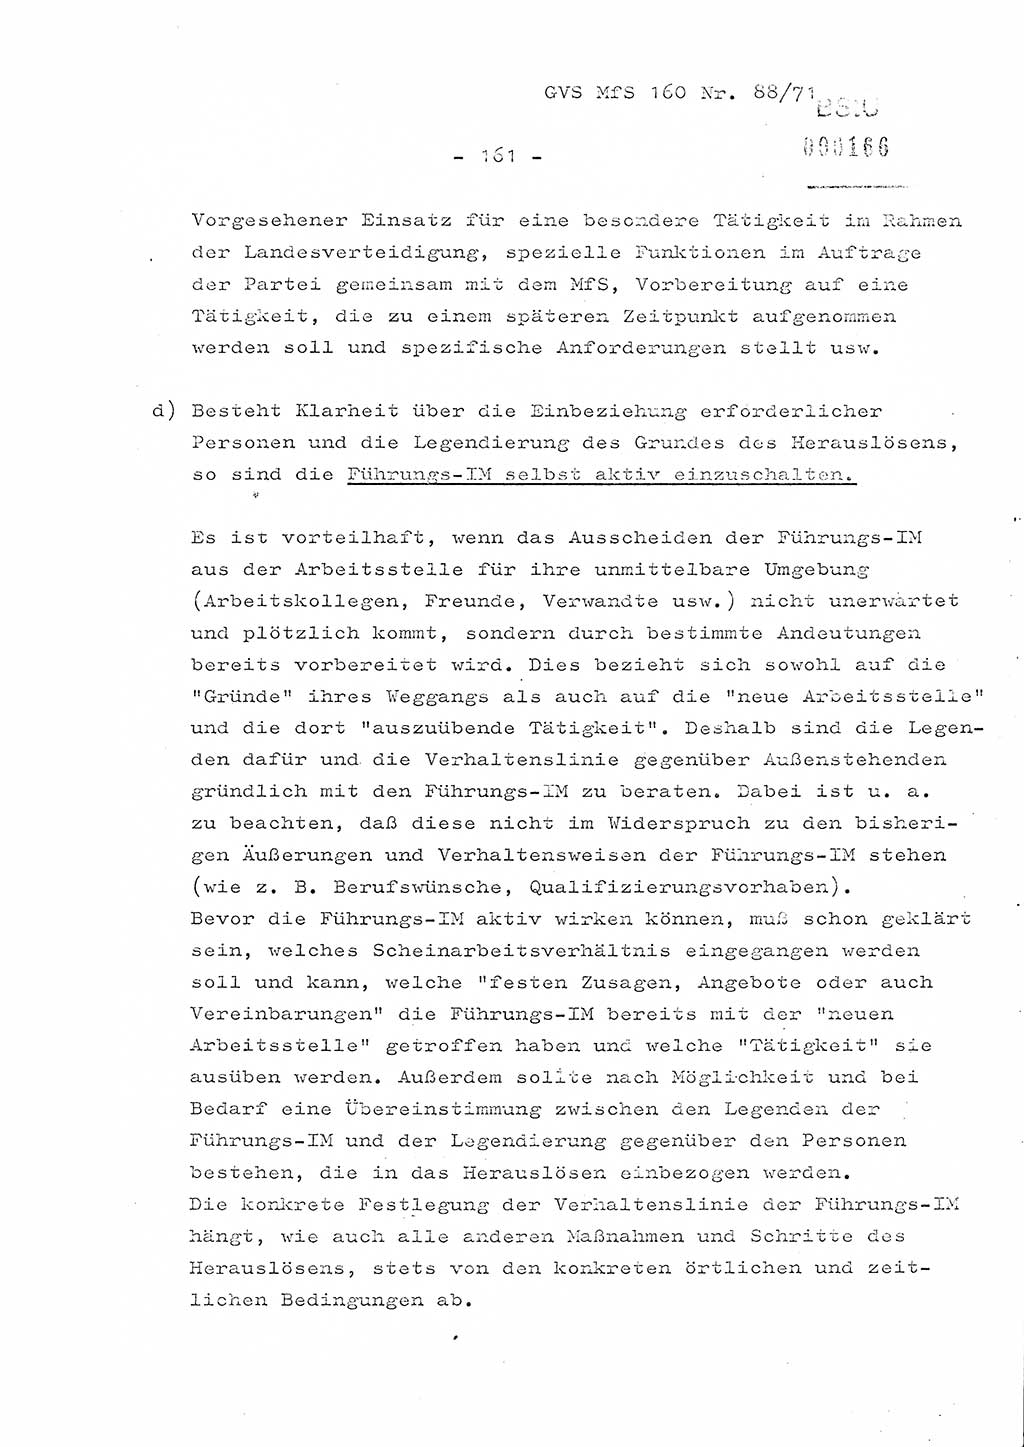 Dissertation Oberstleutnant Josef Schwarz (BV Schwerin), Major Fritz Amm (JHS), Hauptmann Peter Gräßler (JHS), Ministerium für Staatssicherheit (MfS) [Deutsche Demokratische Republik (DDR)], Juristische Hochschule (JHS), Geheime Verschlußsache (GVS) 160-88/71, Potsdam 1972, Seite 161 (Diss. MfS DDR JHS GVS 160-88/71 1972, S. 161)